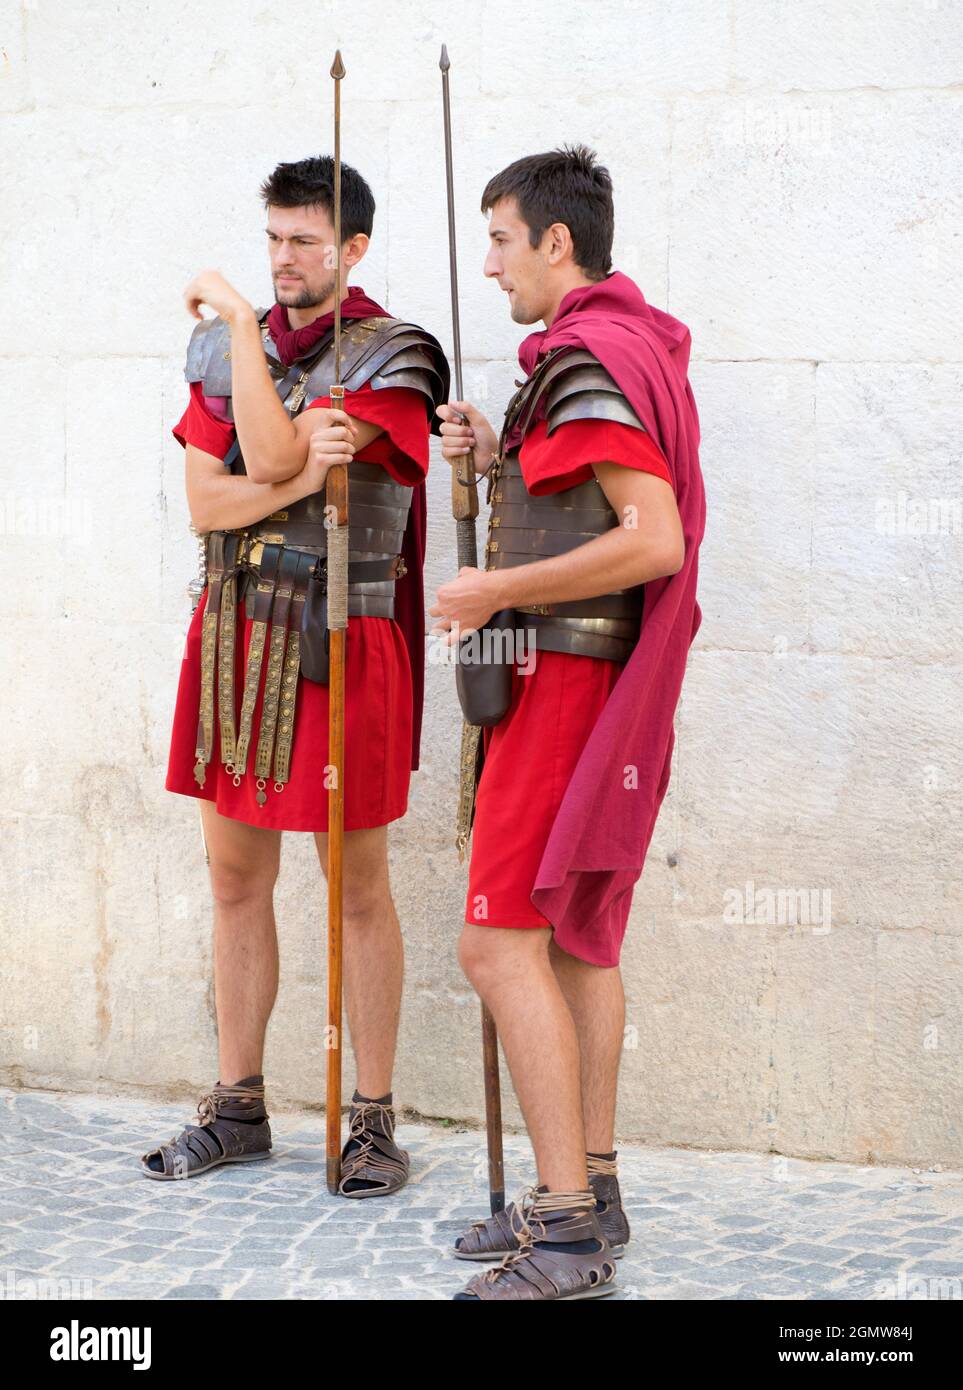 Split, Croacia - 6 de agosto de 2016 Alguien tiene que decir a estos legionarios que el Imperio Romano cayó aroun hace 1500 años. Todavía están en servicio guardi Foto de stock